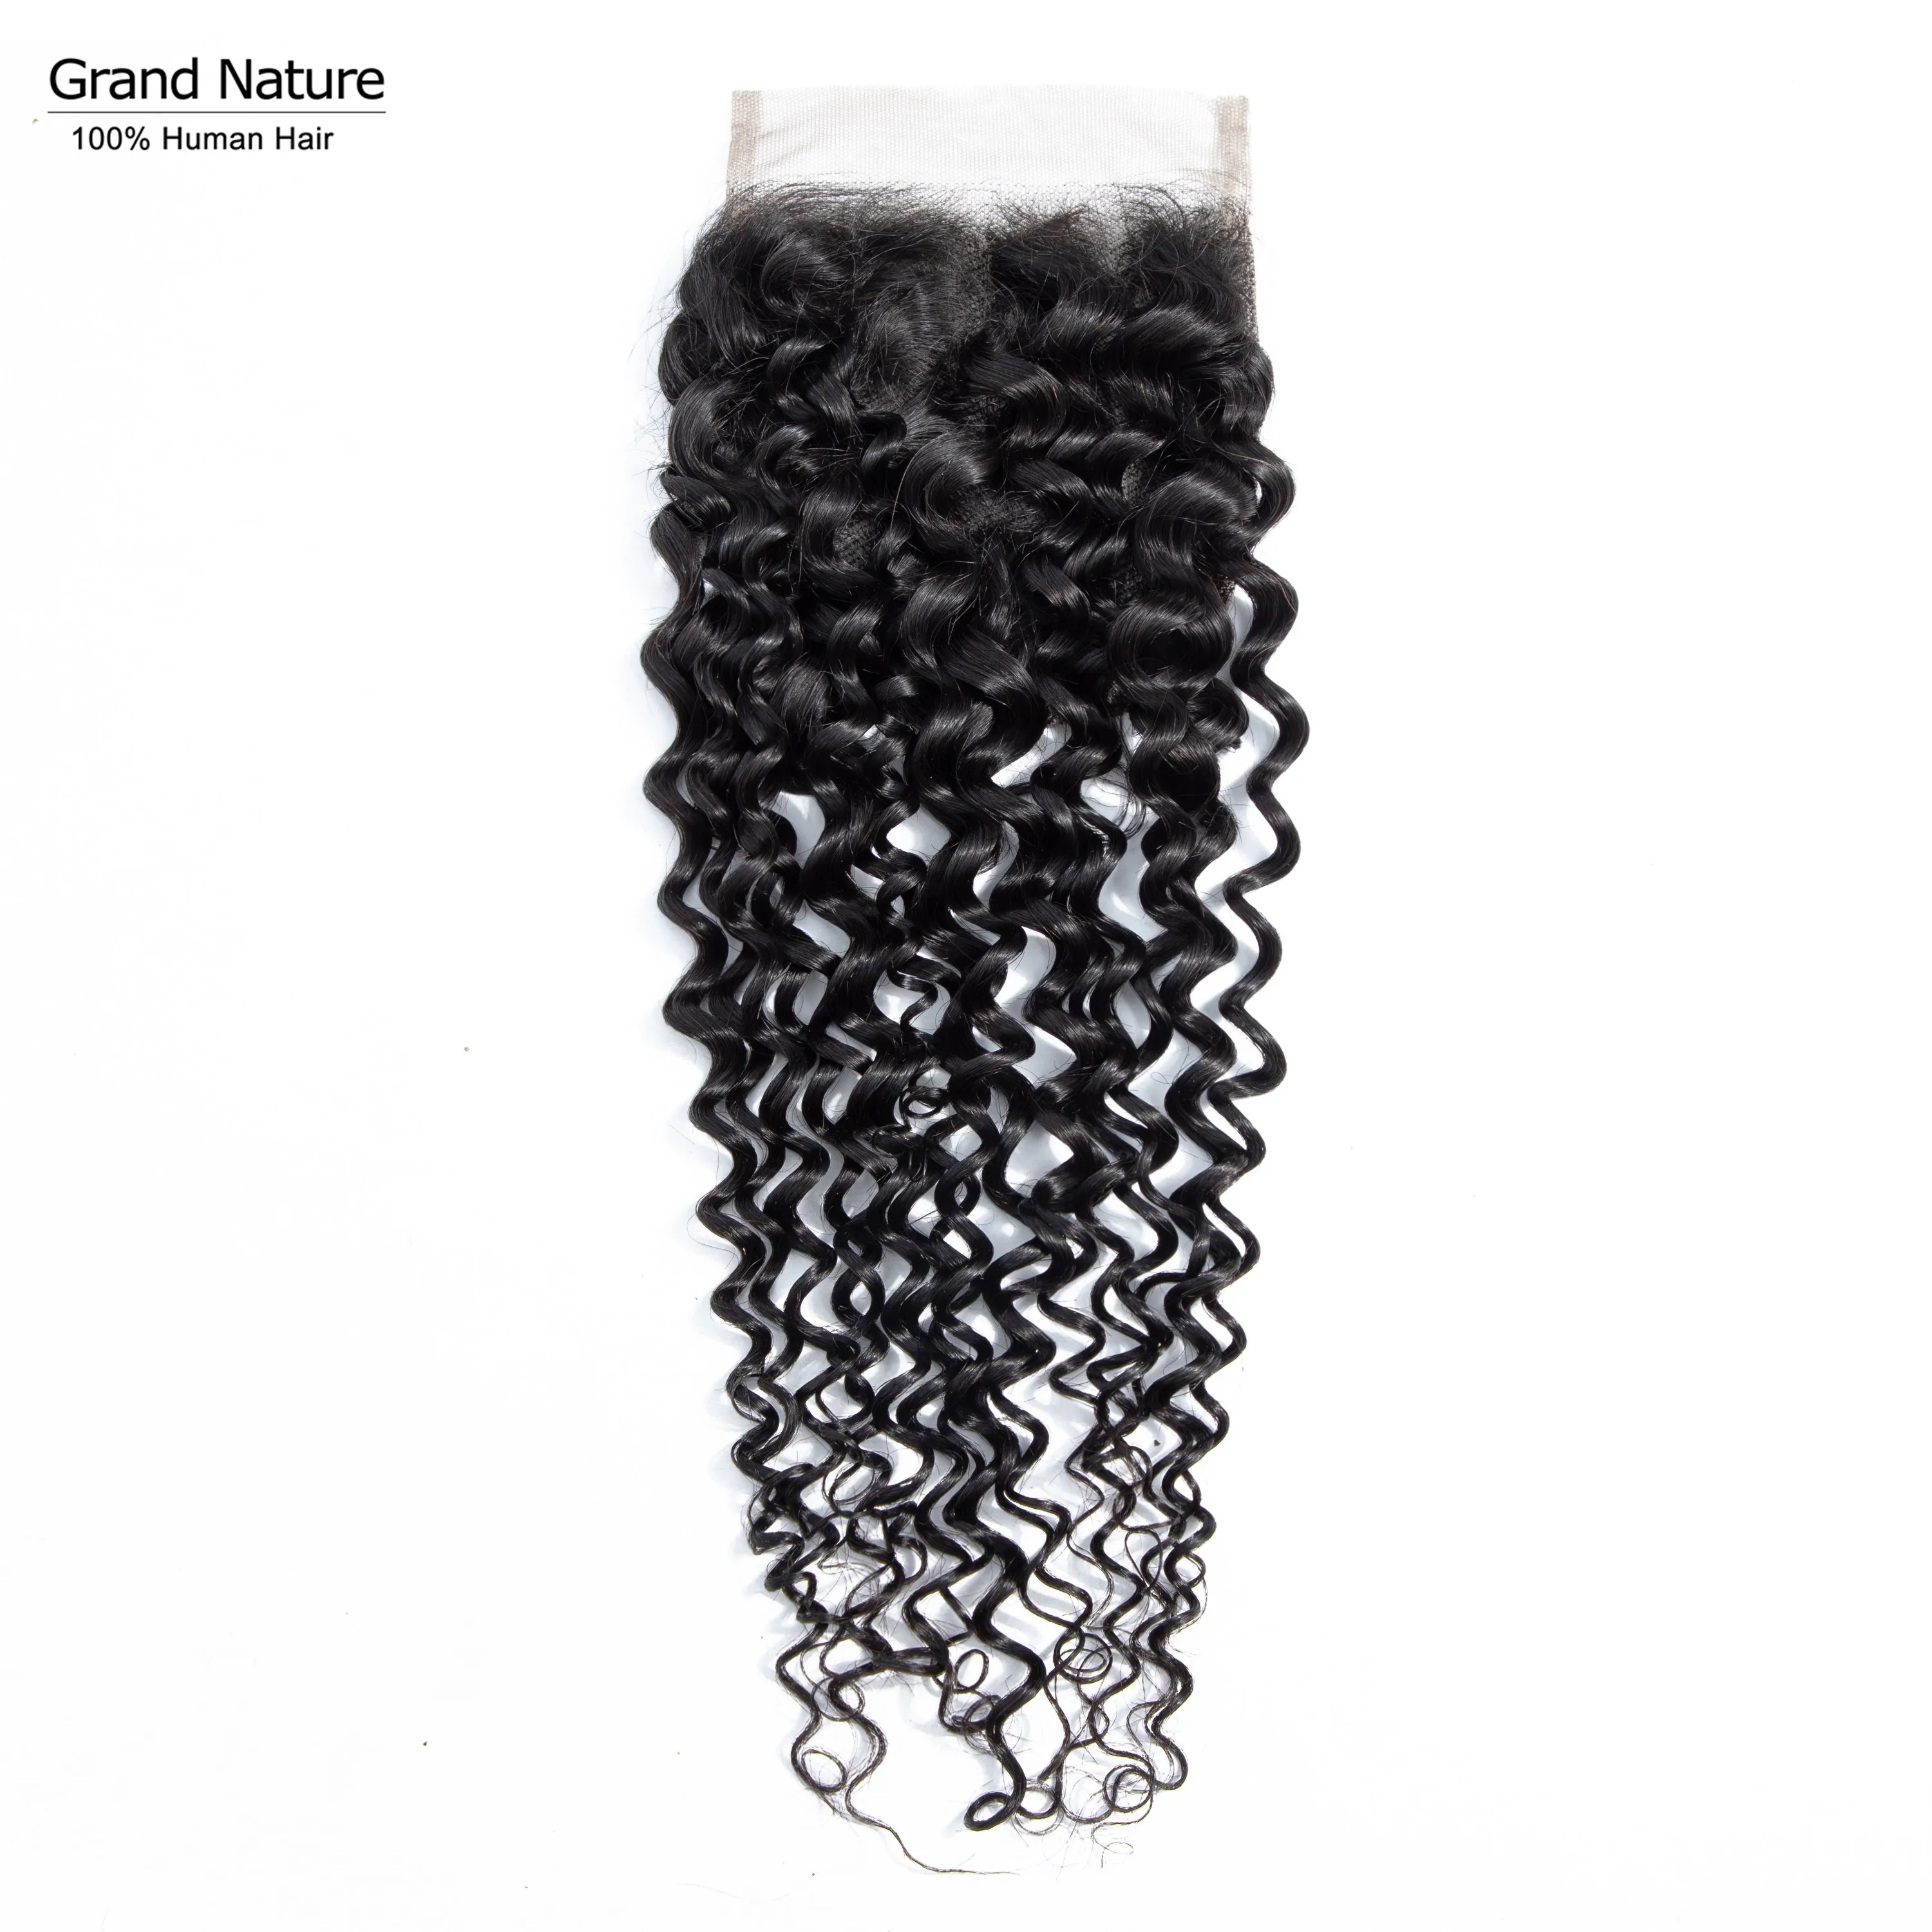 Grand natural индийские Волнистые Кружева Закрытие 4x4 дюймов человеческих волос с волосами младенца естественного цвета могут быть окрашены Remy